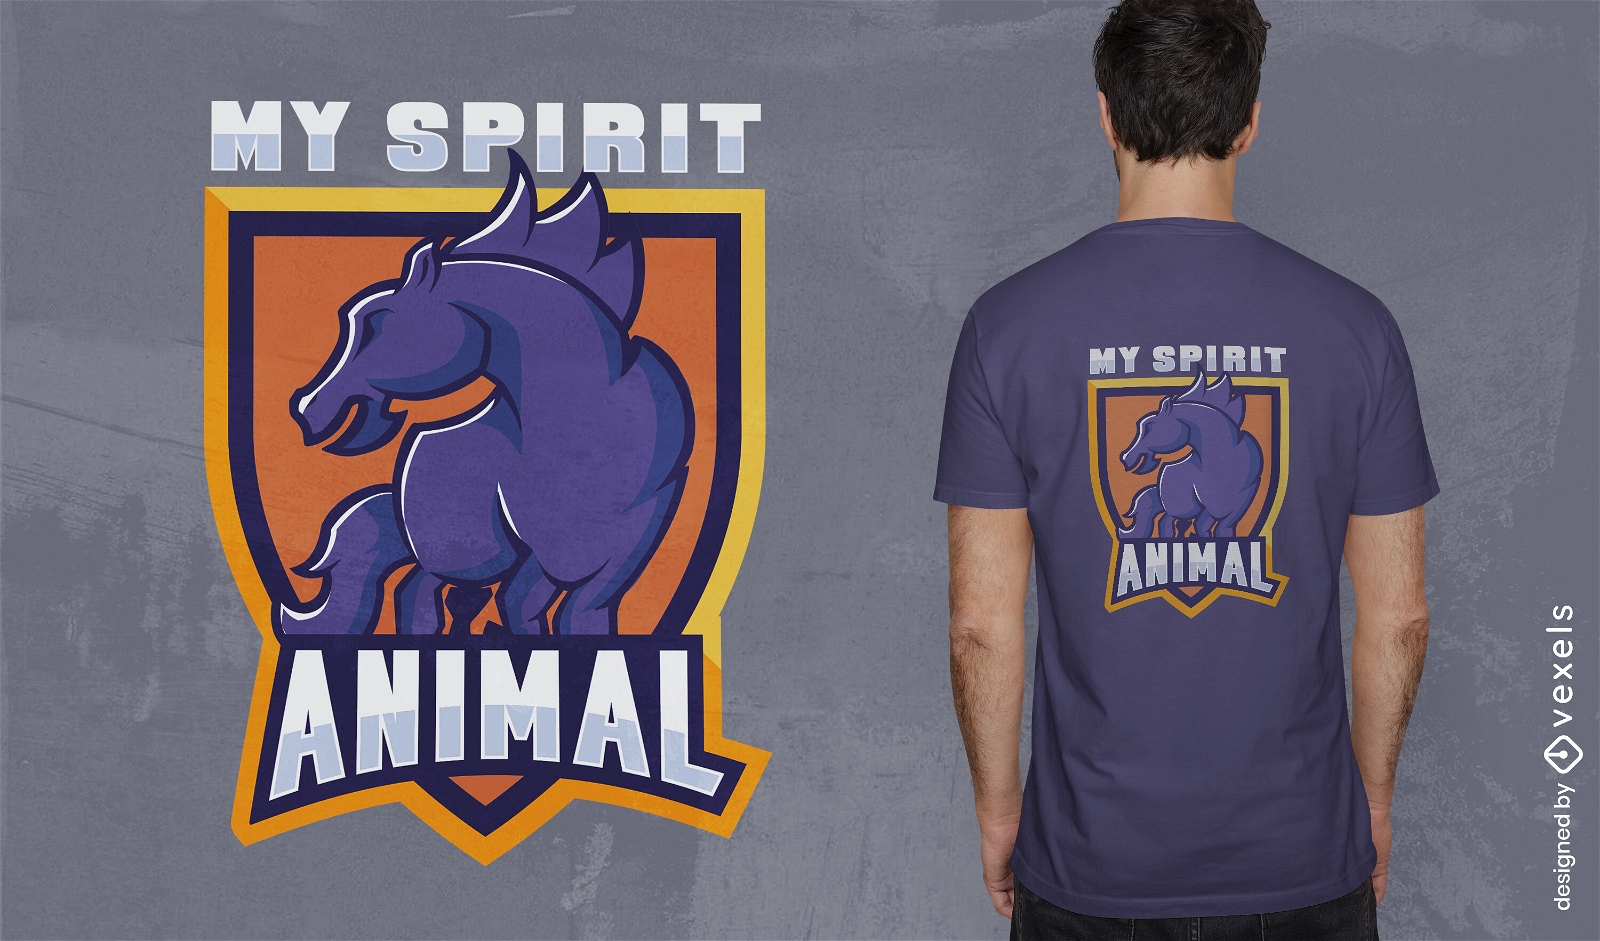 Horse spirit t-shirt design